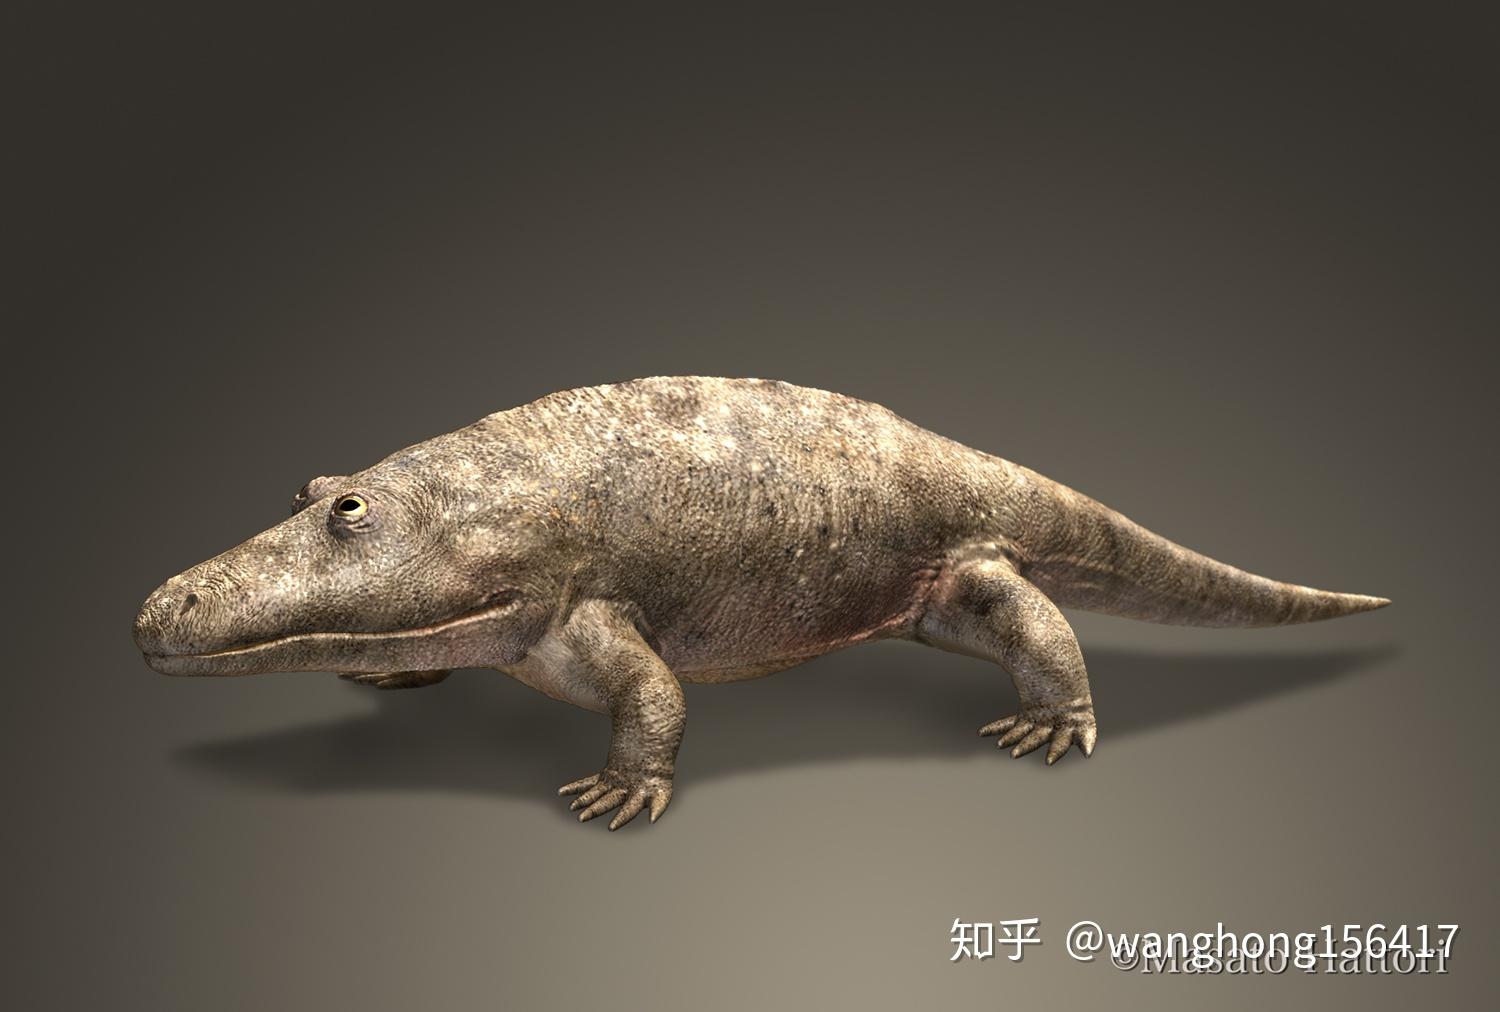 沧龙带动画 沙尼龙 鱼龙 鳄鱼进化 恐龙 游动的鱼龙 蛇颈龙 石炭纪 远古生物-cg模型免费下载-CG99